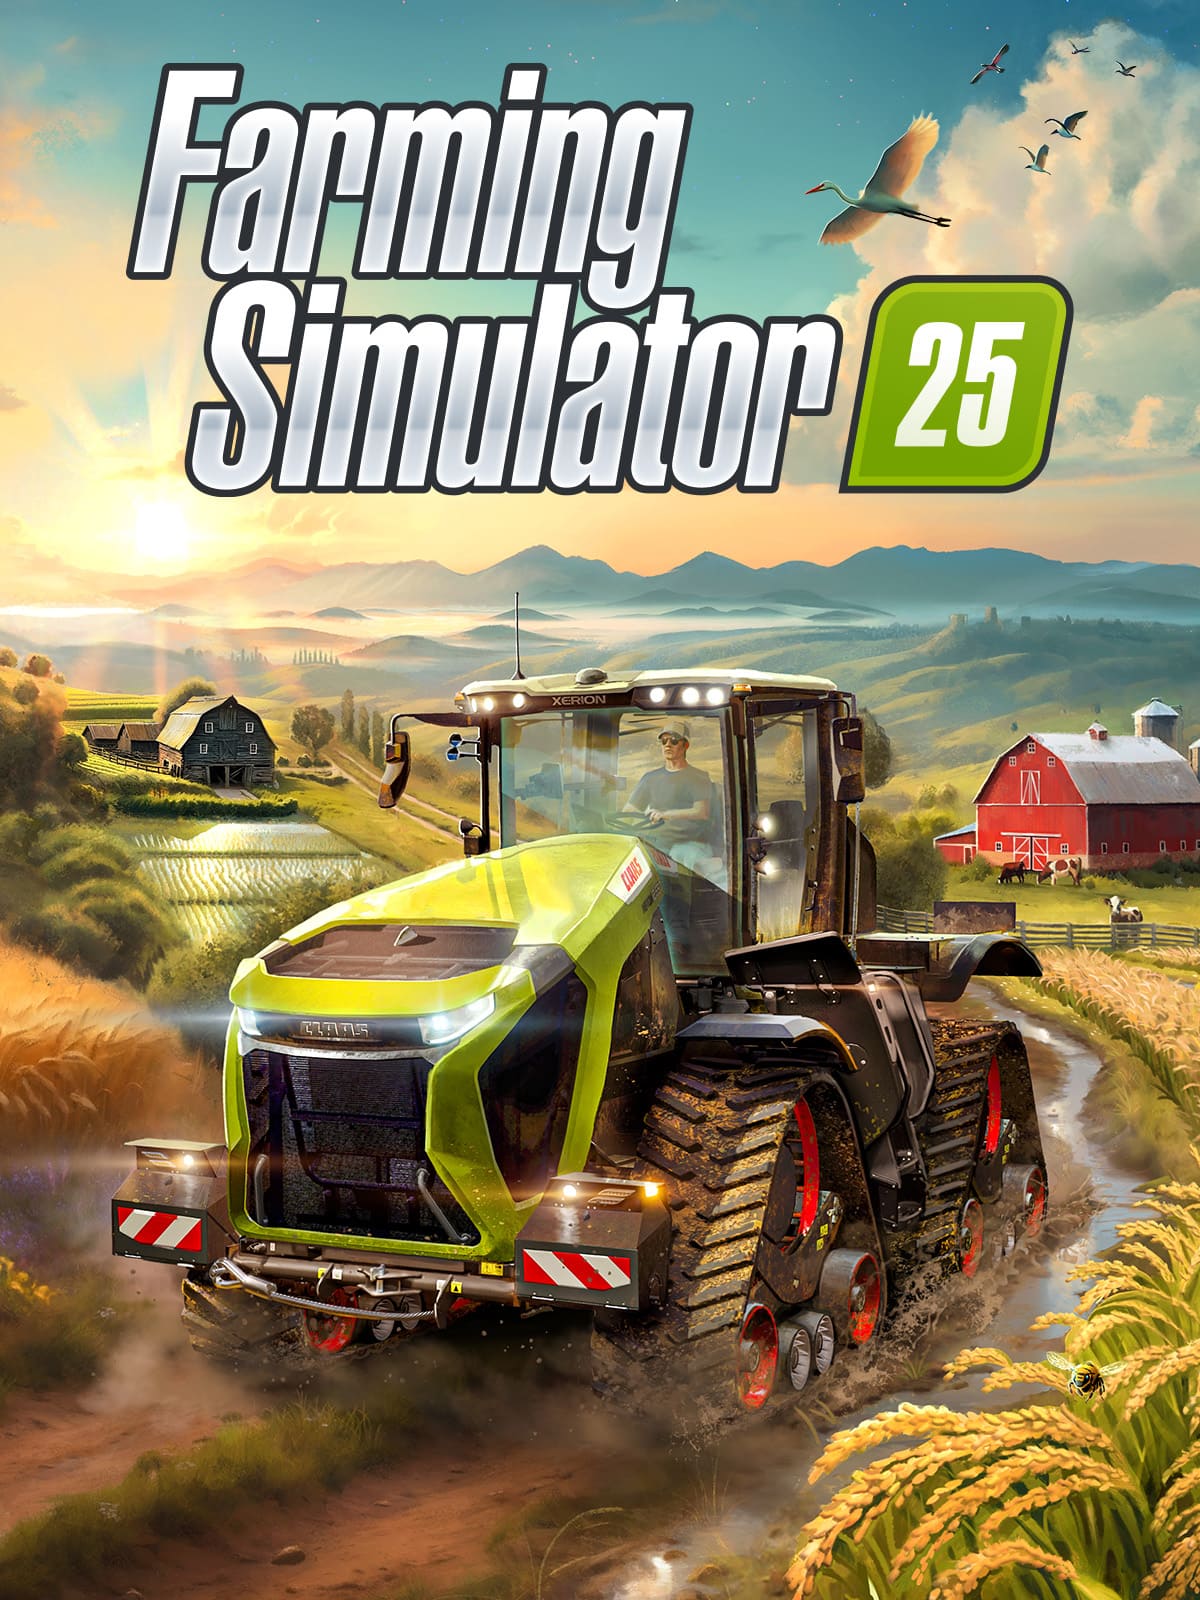 Картинка Farming Simulator 25